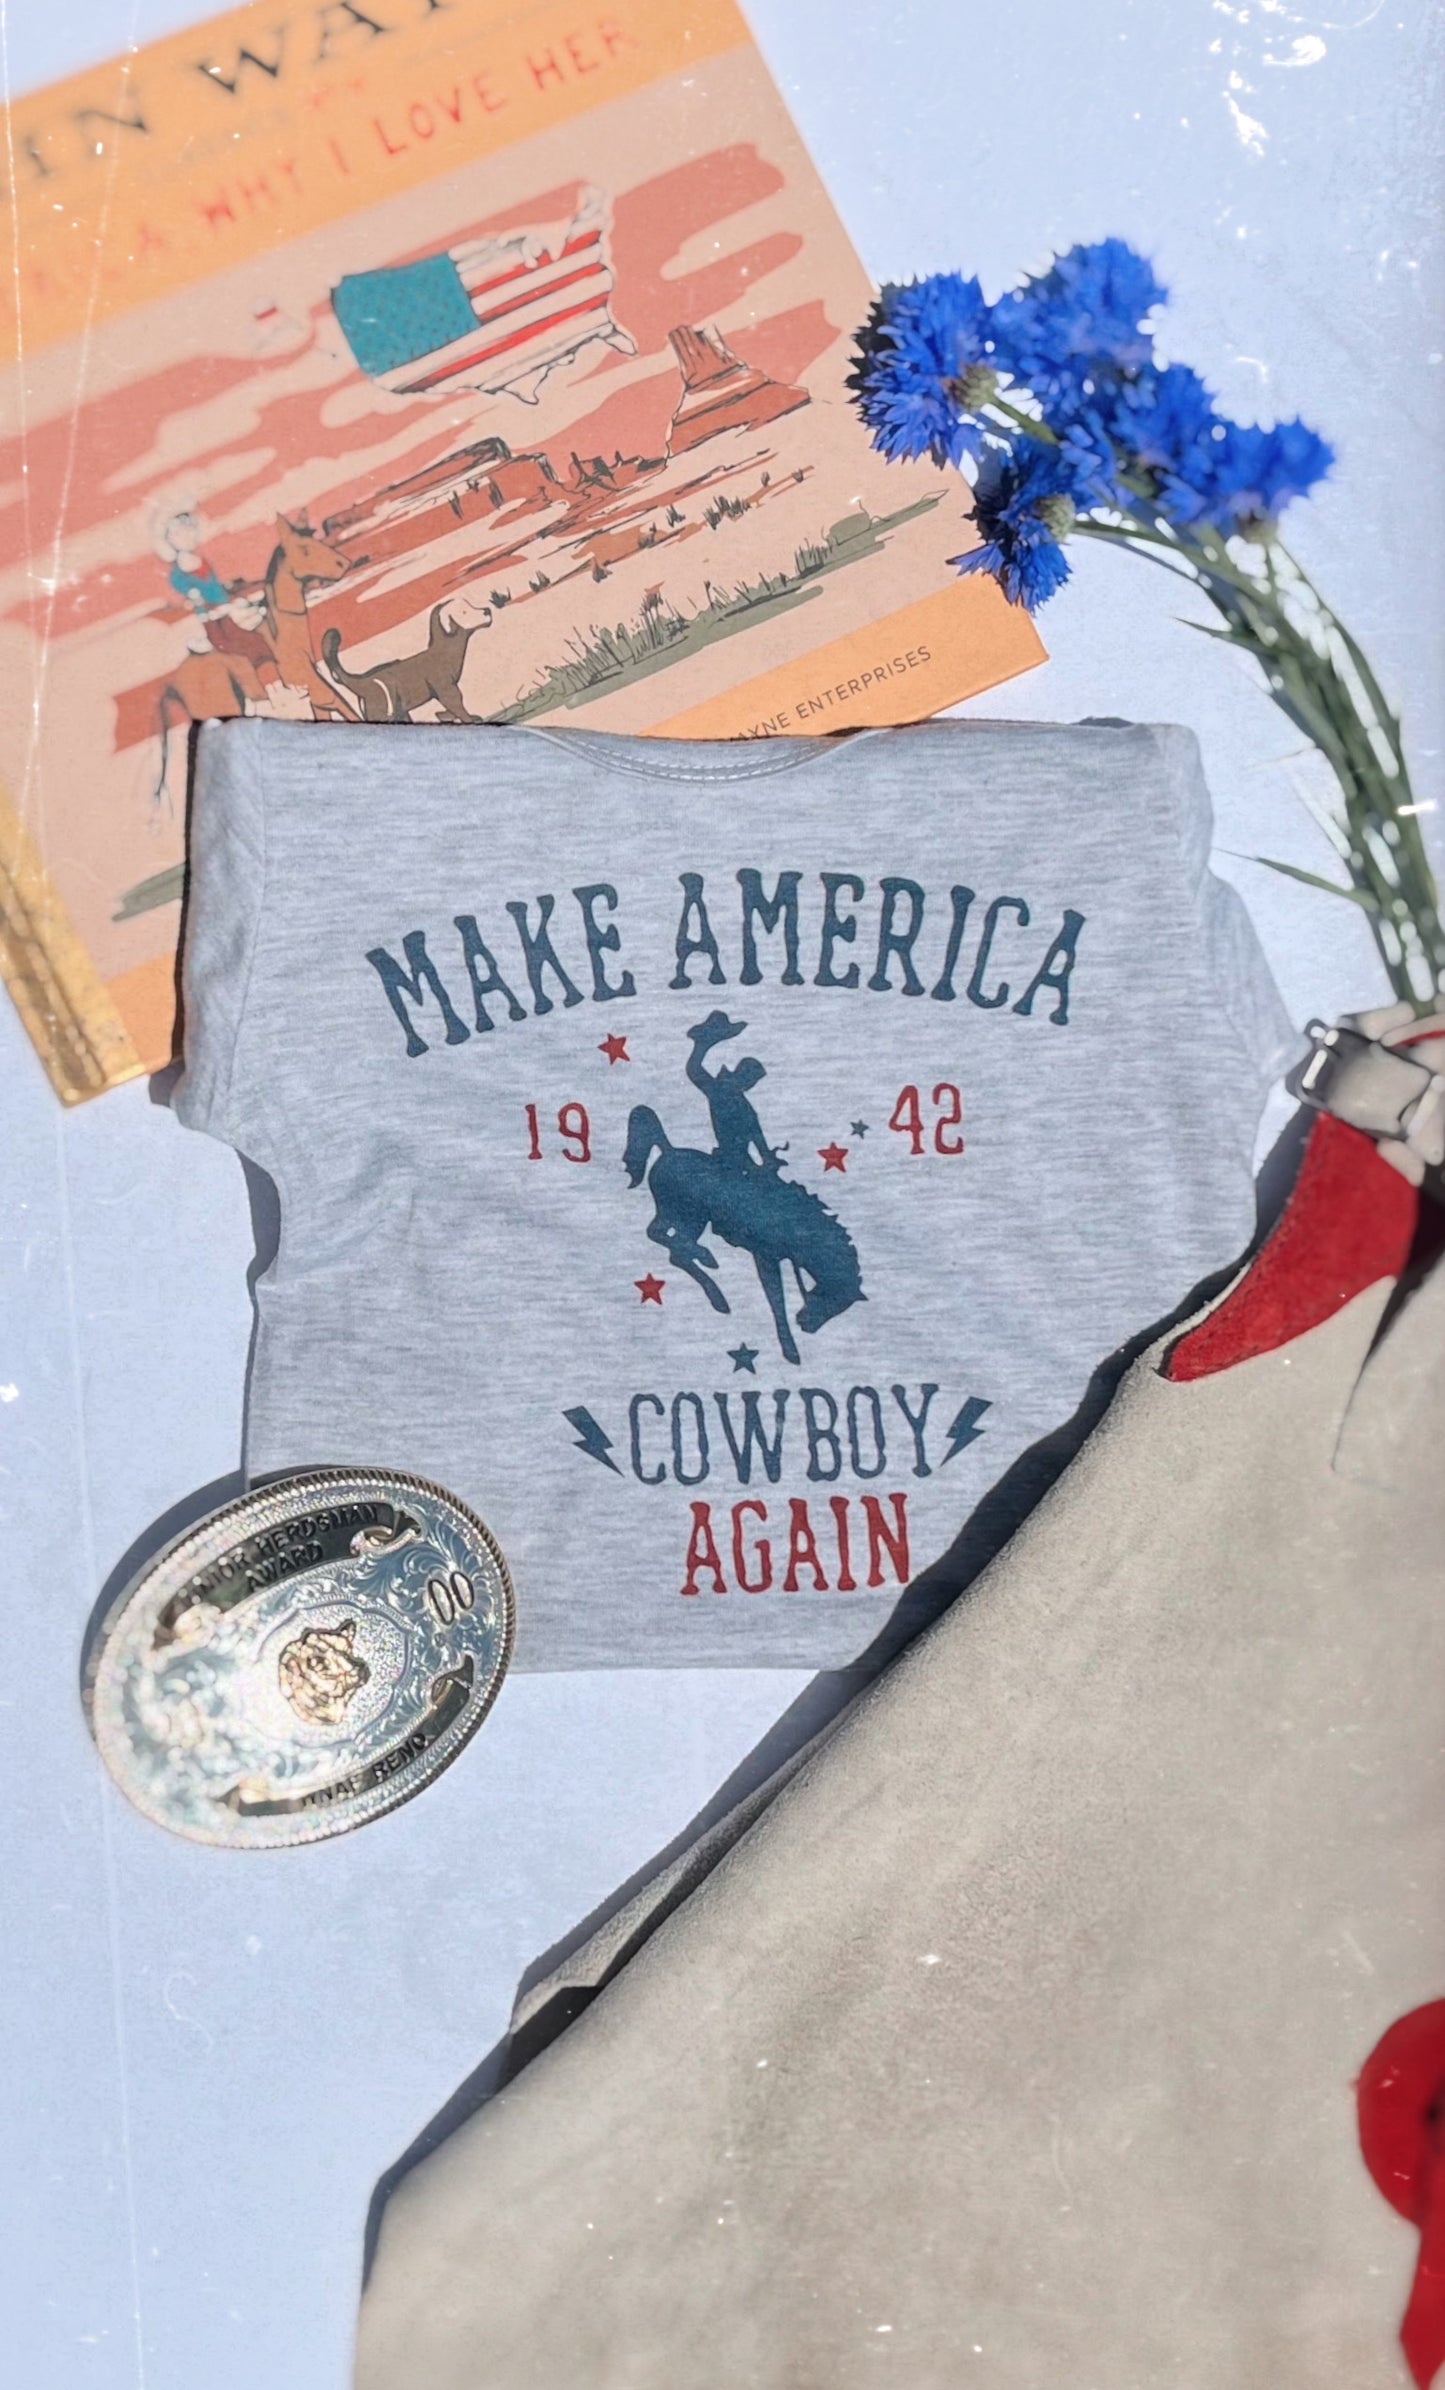 the Make America |Cowboy| Again tee